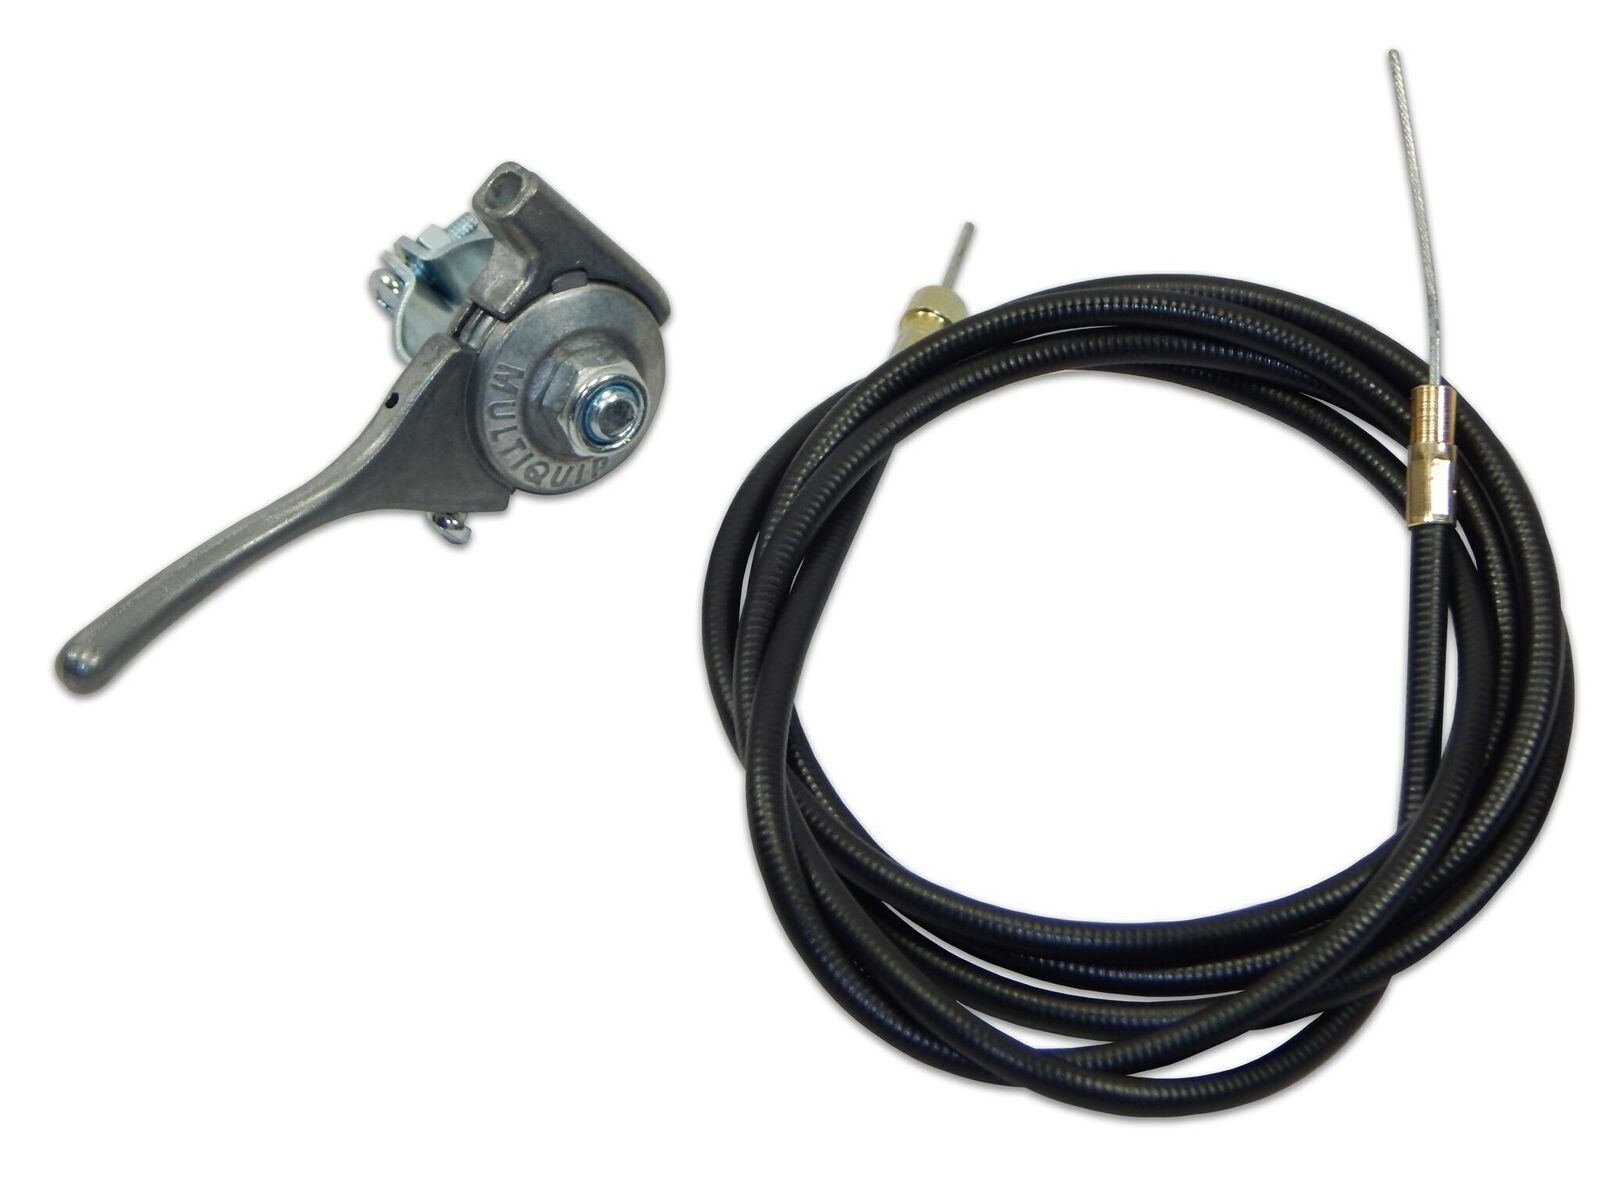 Multiquip-whiteman Throttle Cable Kit Fits J36, Js36, B46, Bs46 Trowel 21243